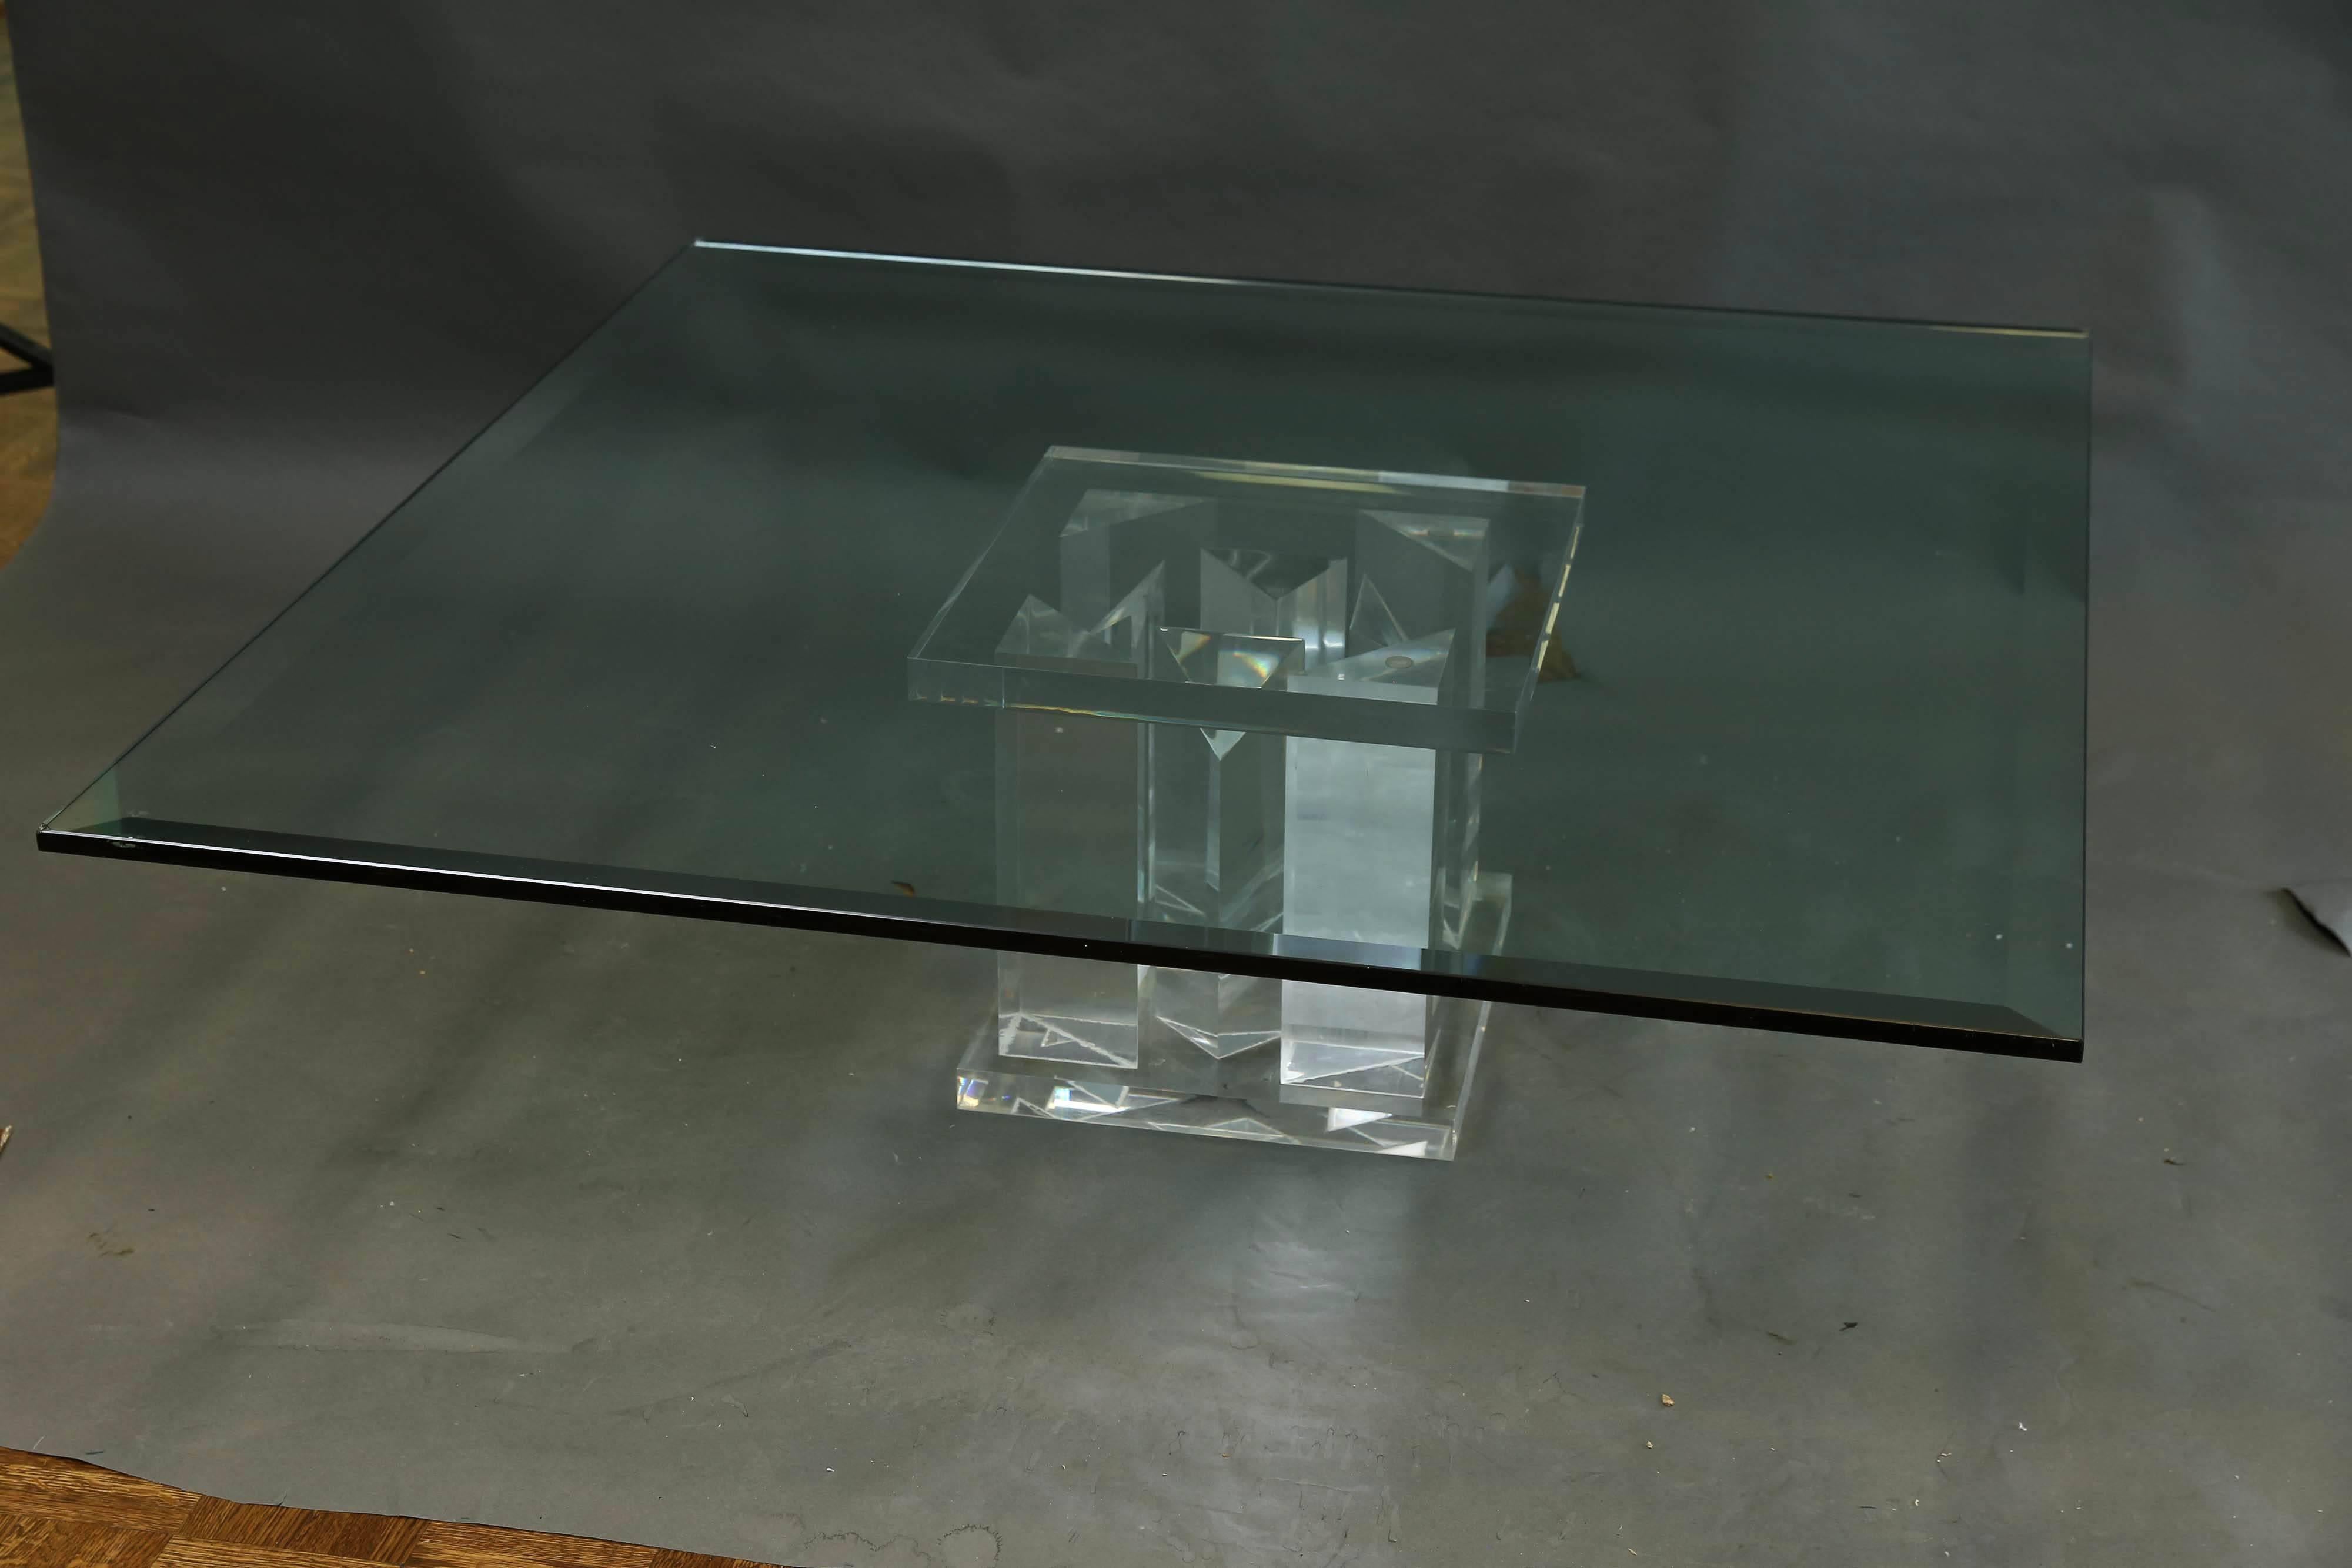 Le plateau de la table basse est constitué d'un épais morceau de verre. La base de support est réalisée en plexiglas et composée de quatre pièces rectangulaires allongées. Grâce au matériau transparent dont est faite la table, elle semble très